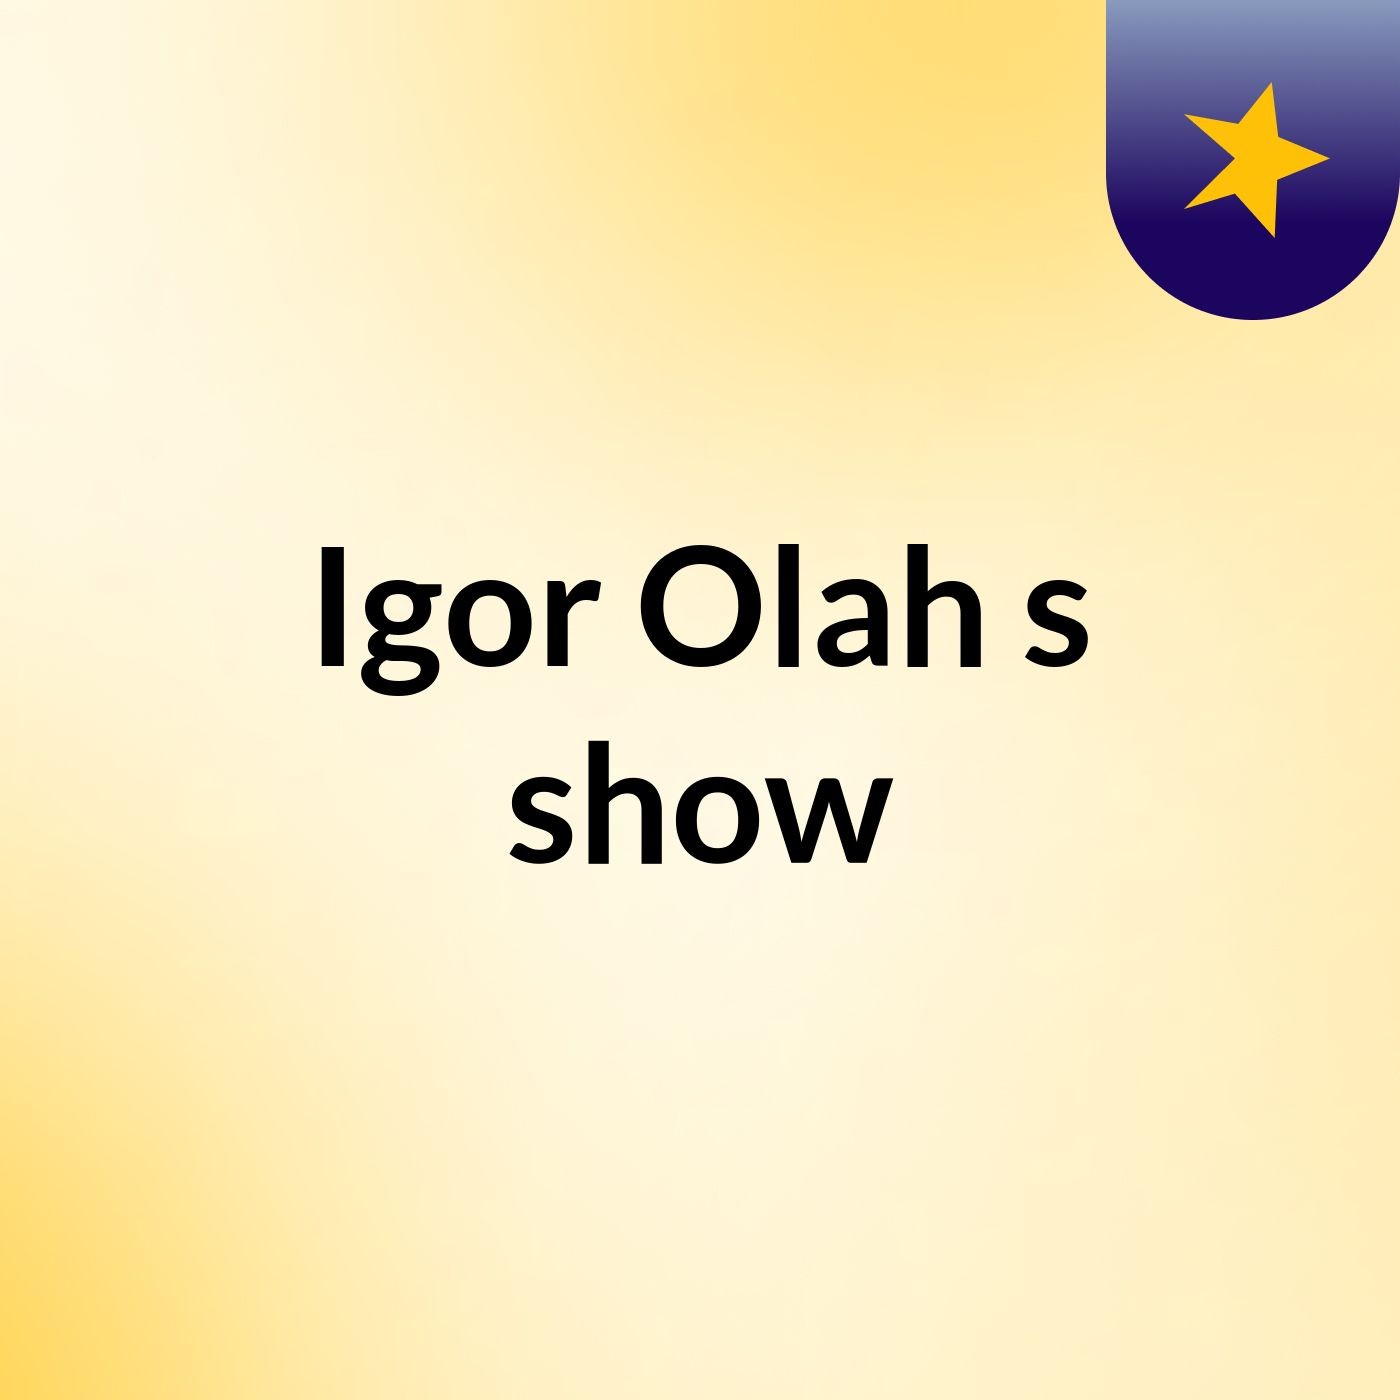 Igor Olah's show